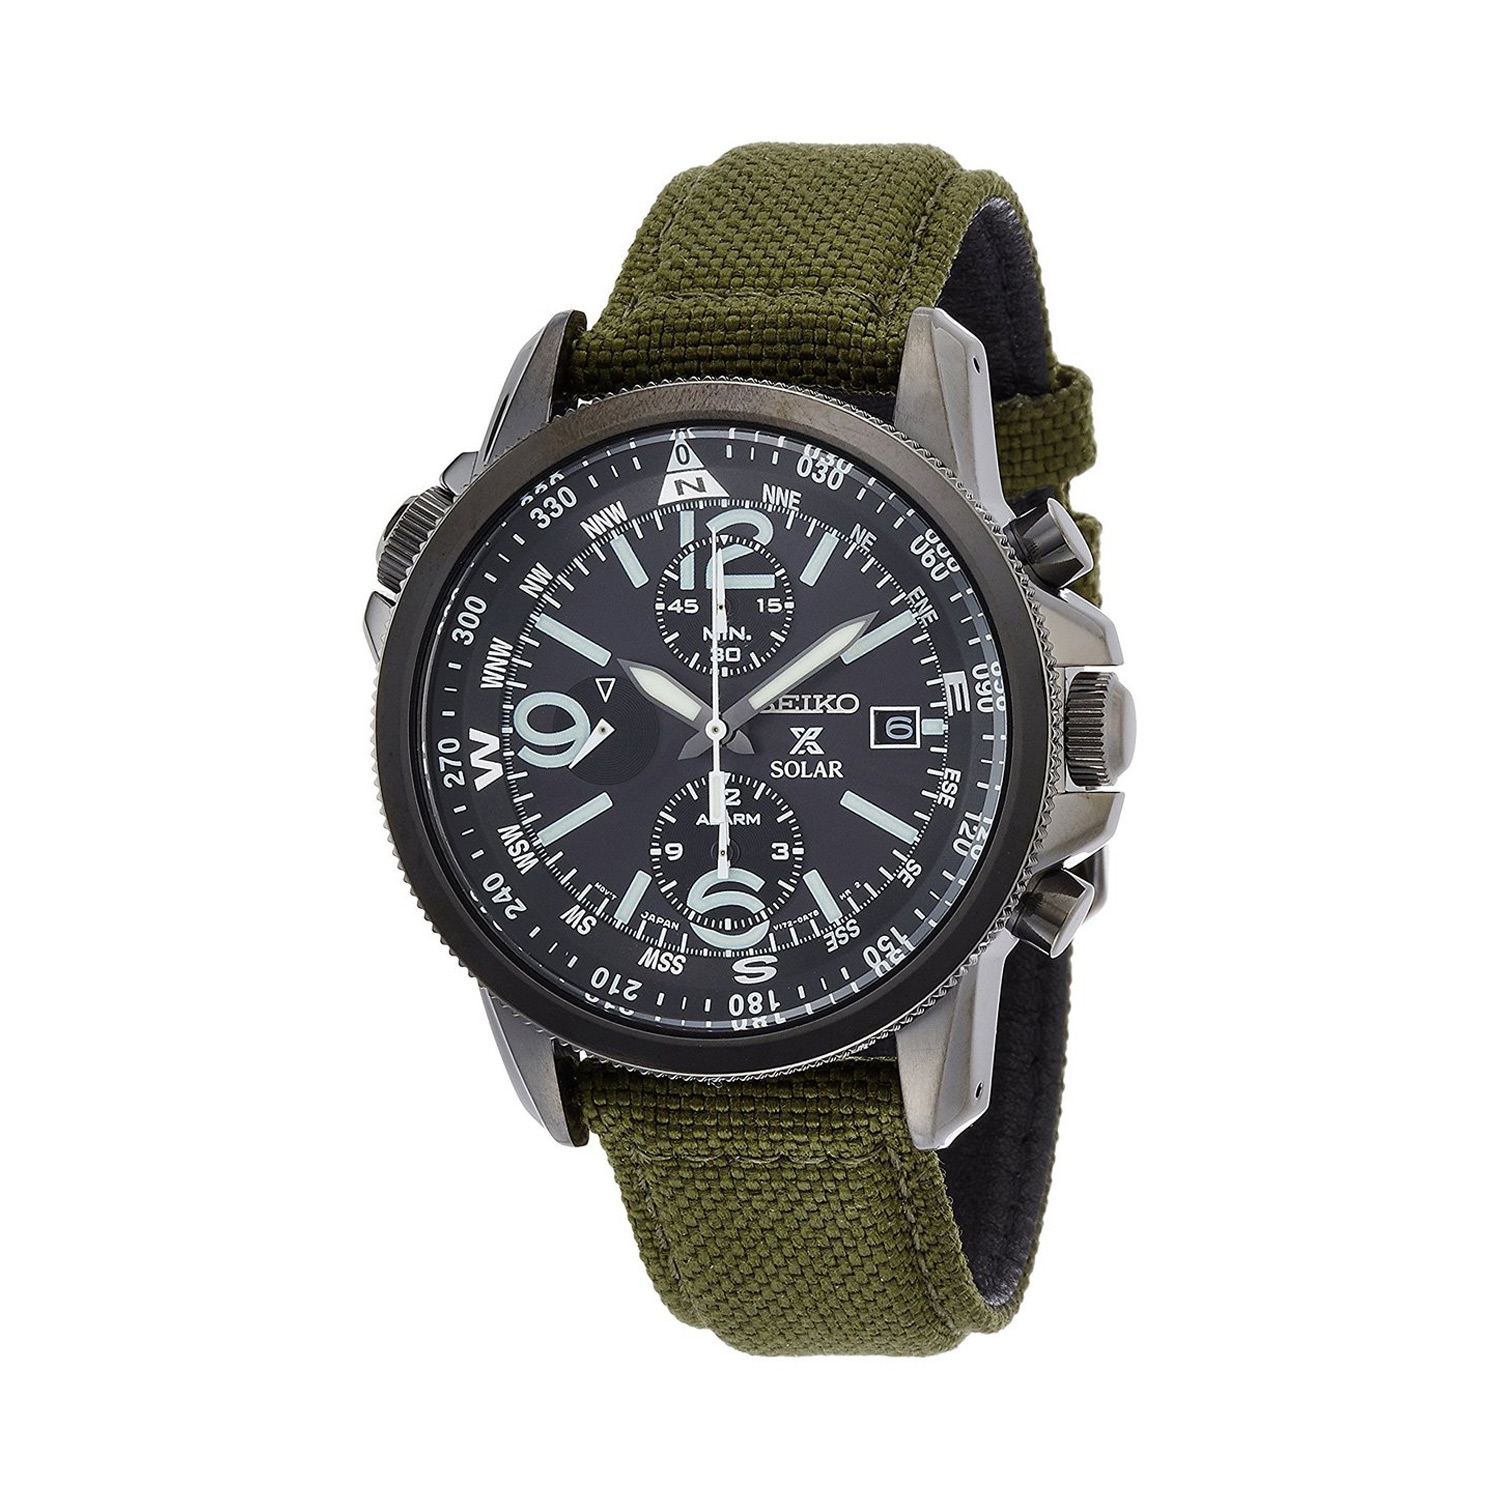 OWS - Seiko SSC295P1 Prospex Solar Military Alarm Chronograph Men's Watch